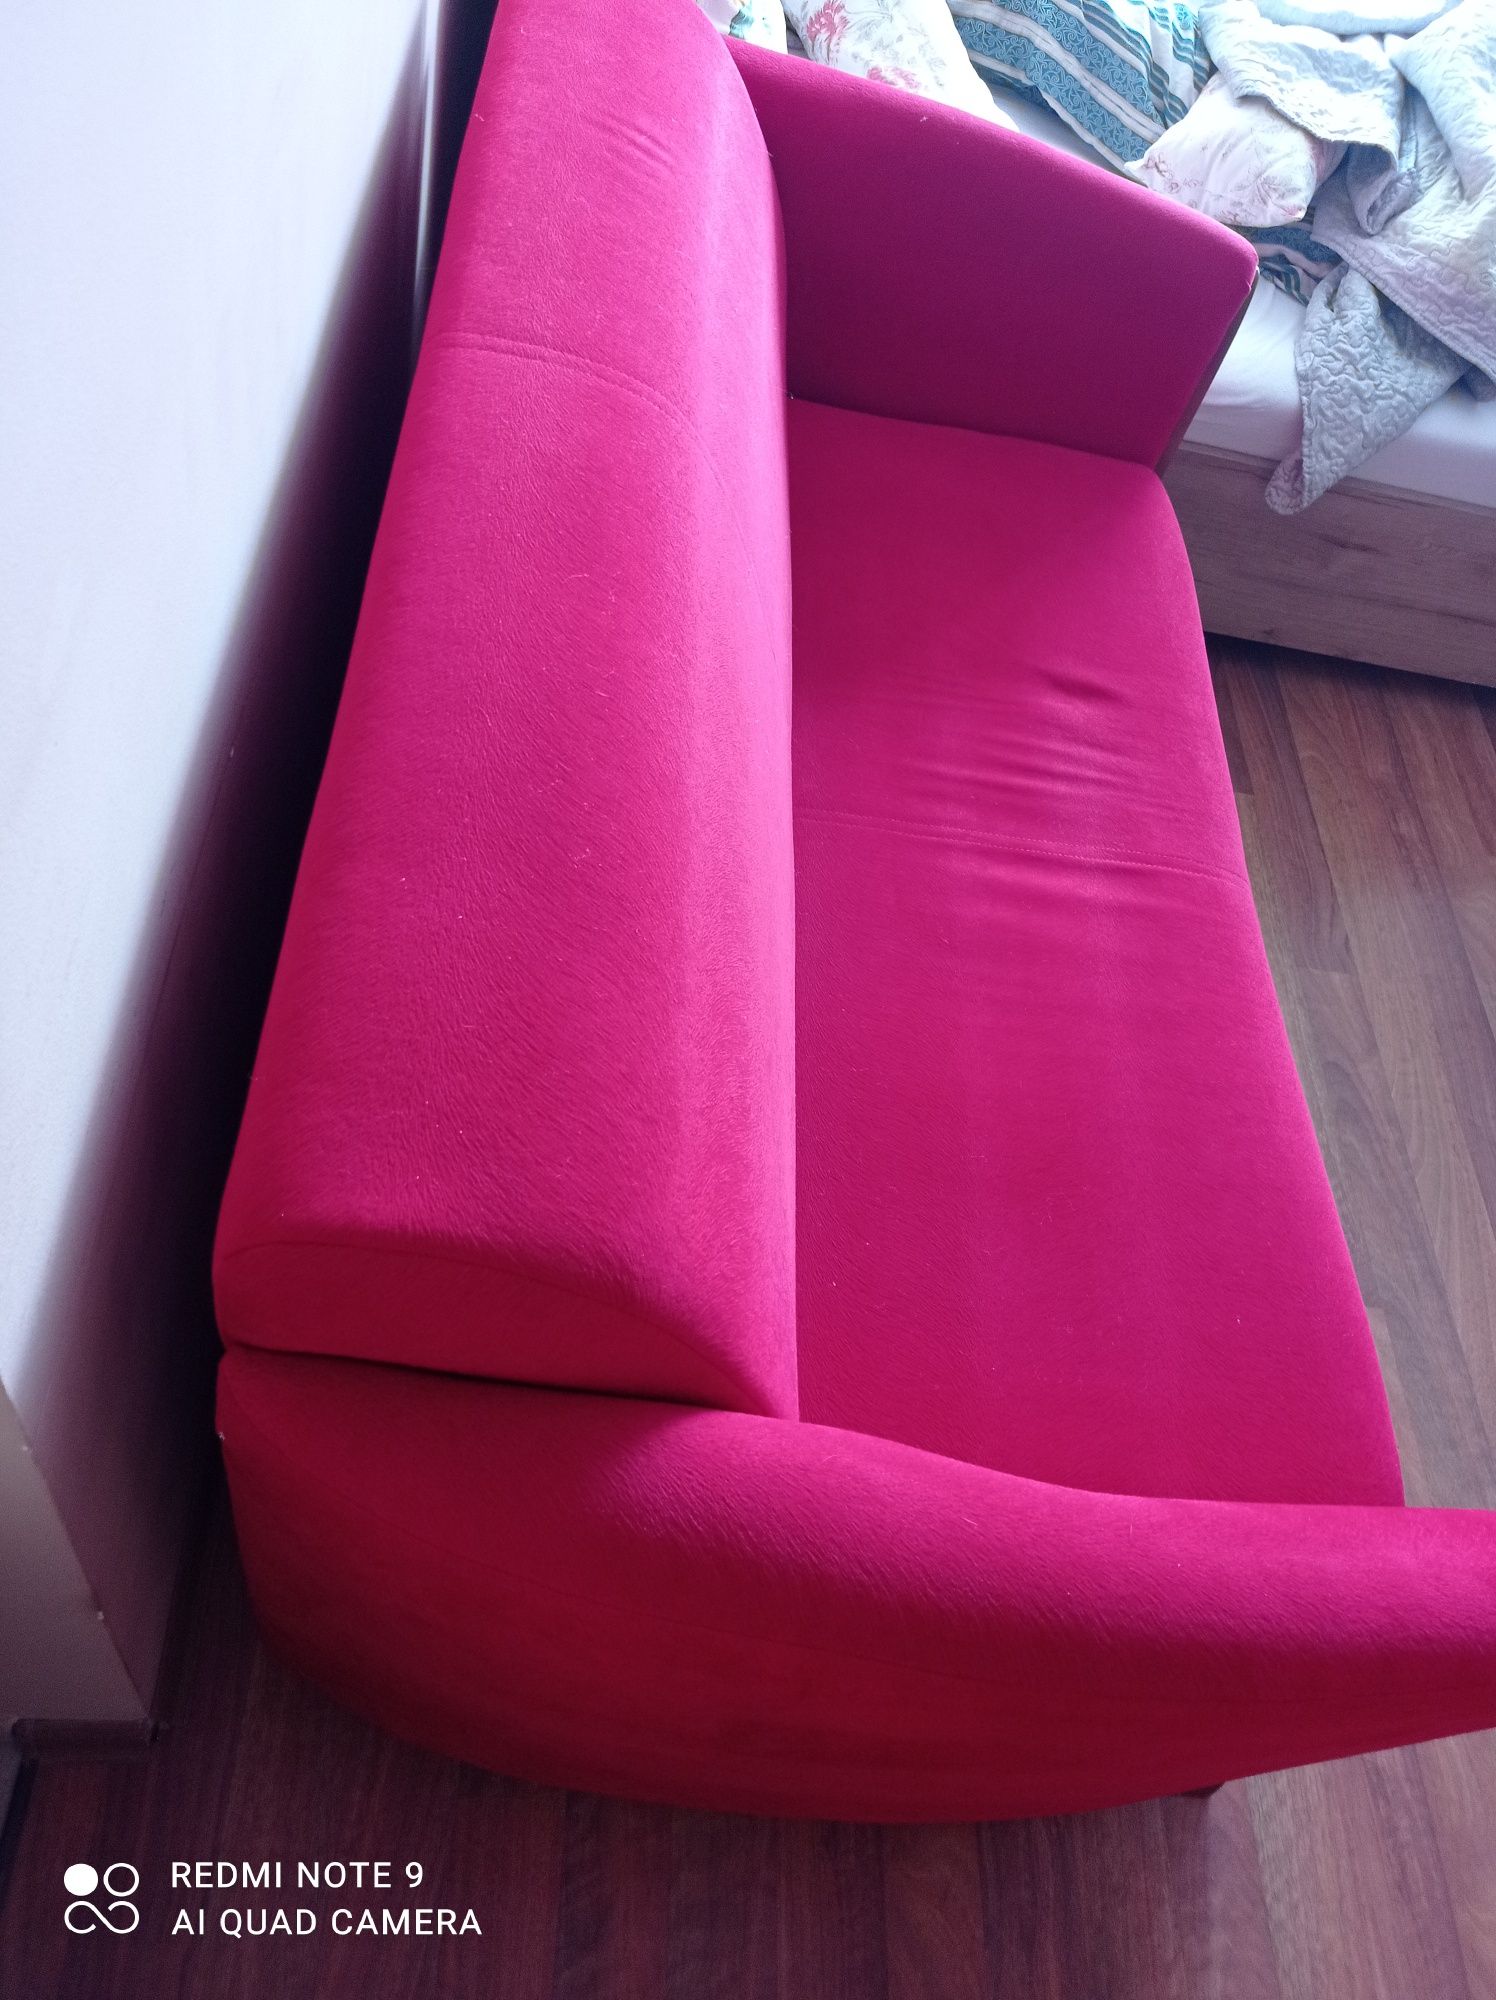 Sofa kolor maliny